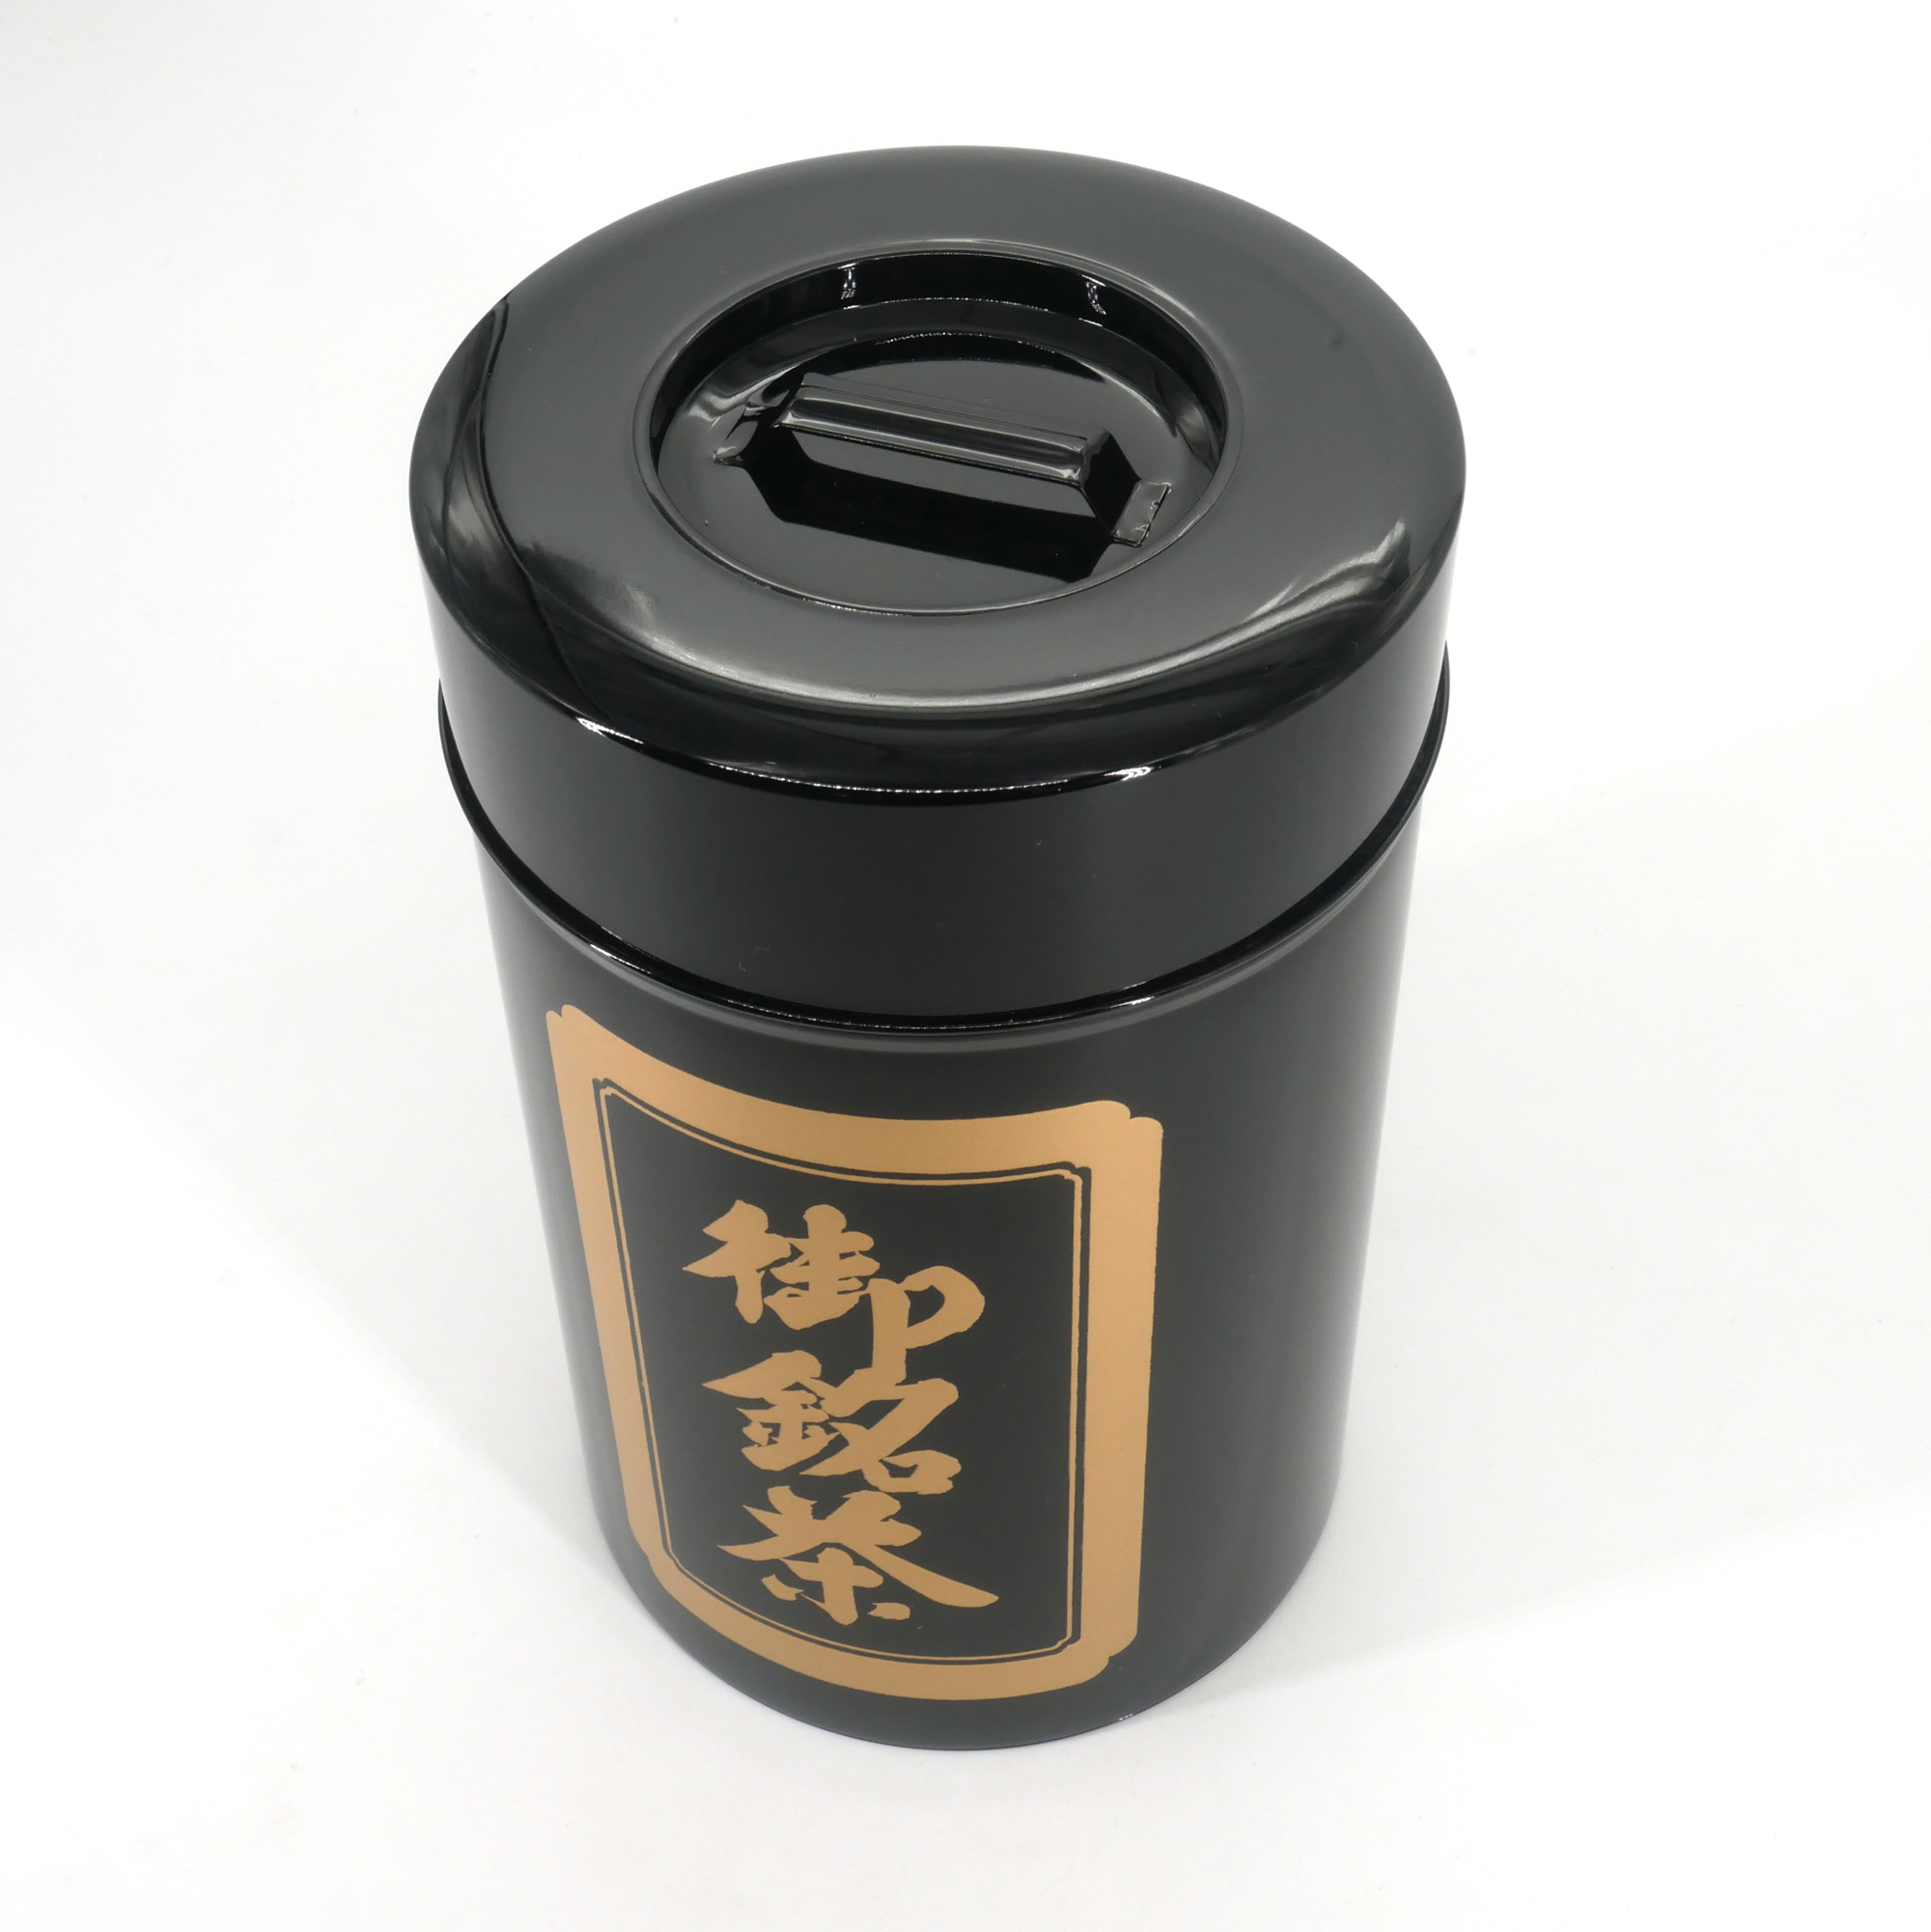 Petite boîte à thé japonaise en fer - Made in Japan